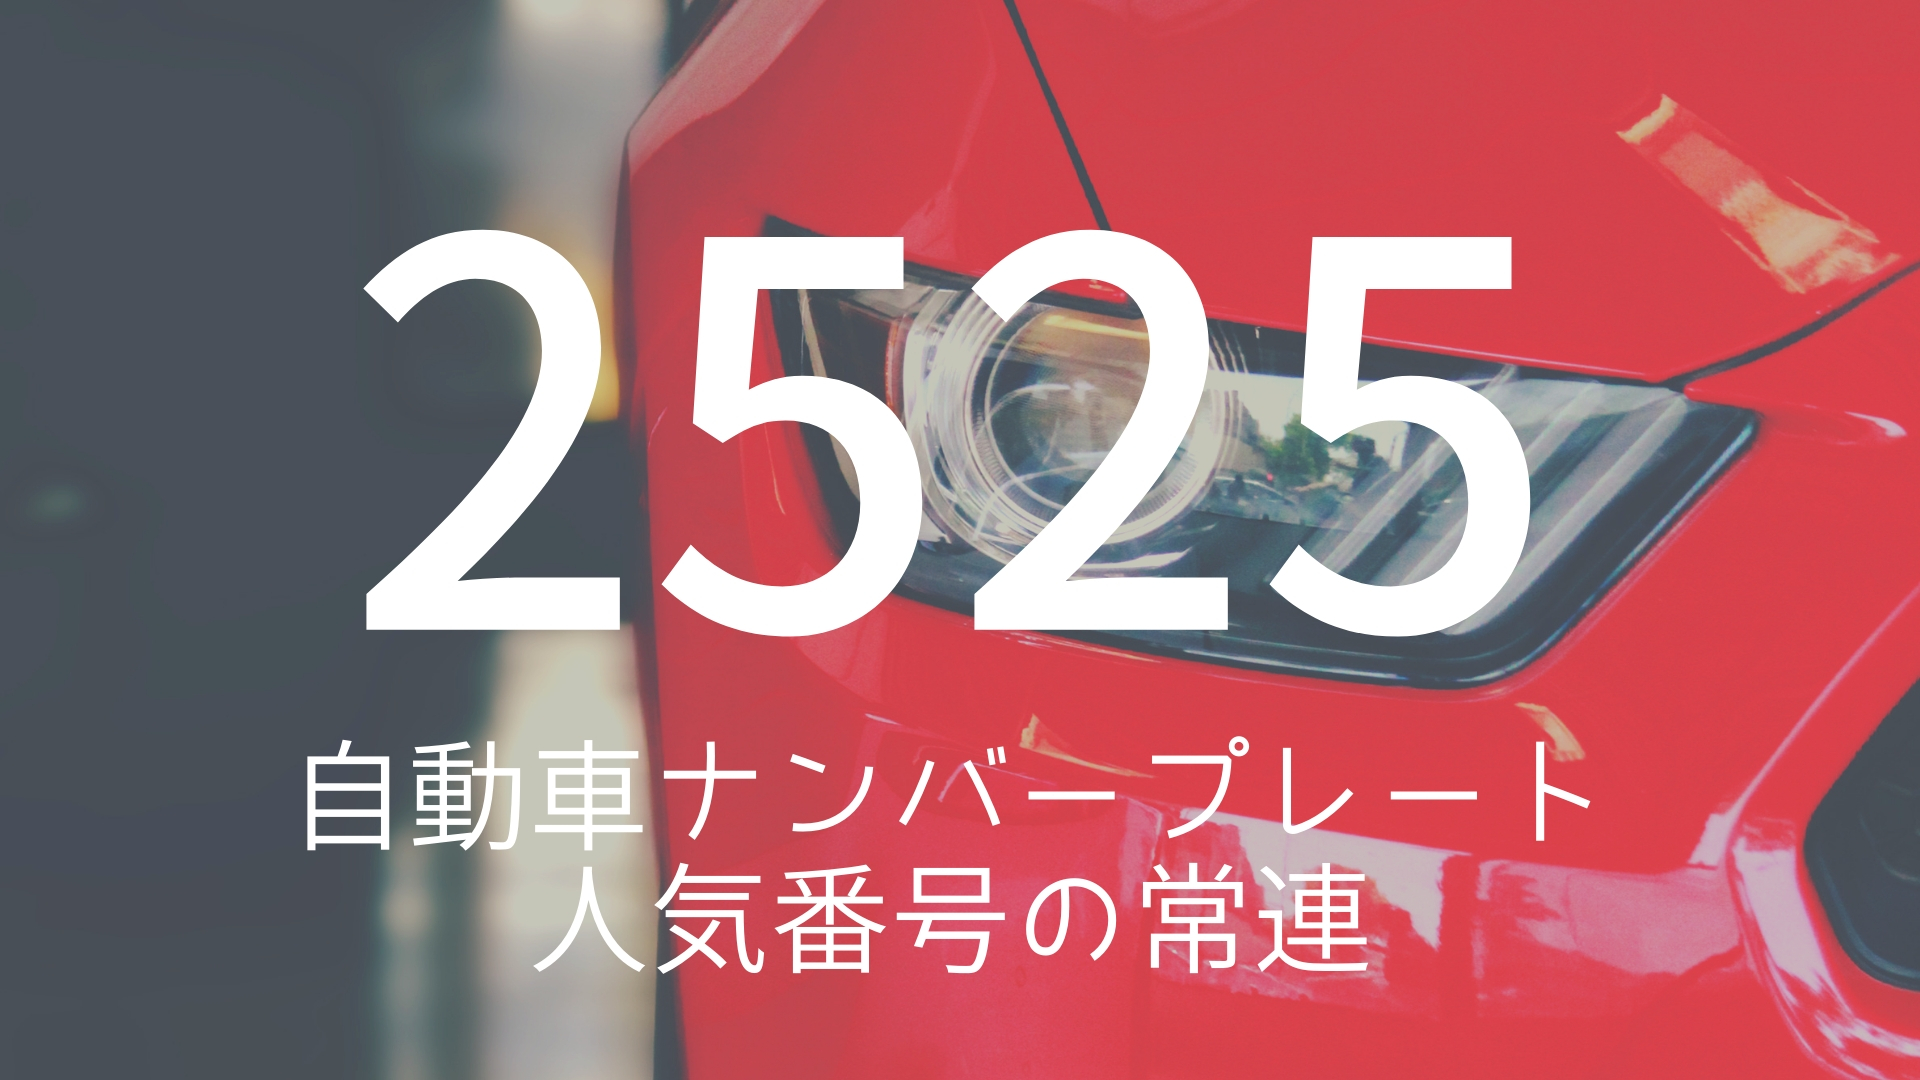 「2525」 >>> 自動車ナンバープレート人気番号の常連。